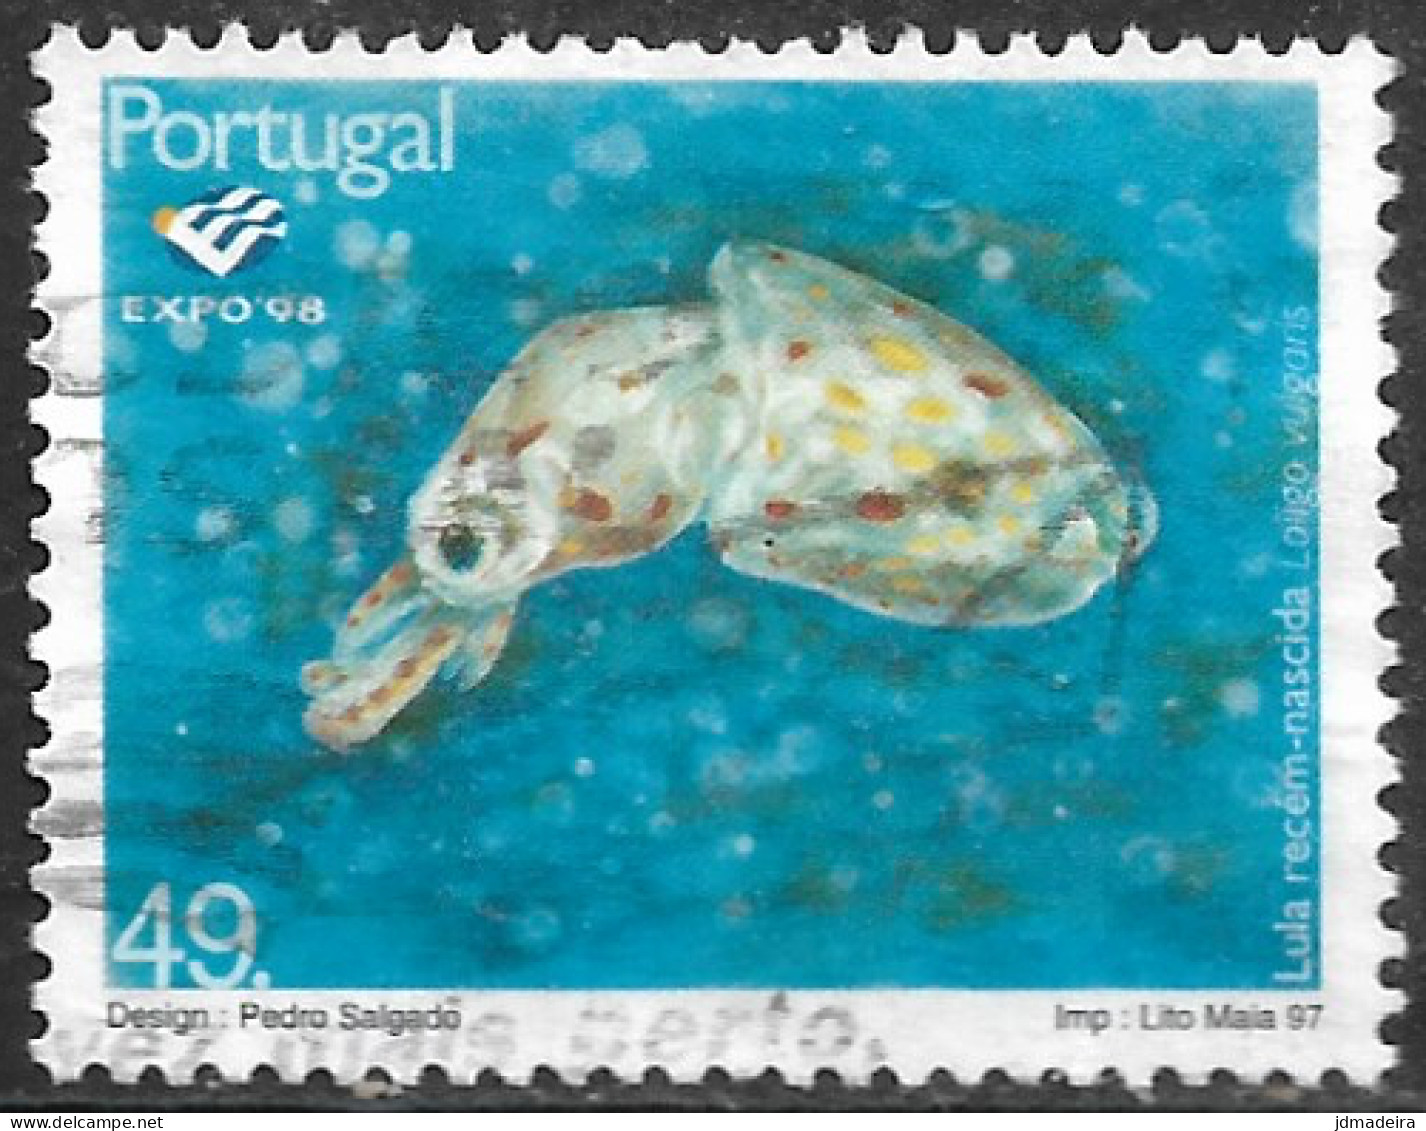 Portugal – 1997 Expo'98 40. Used Stamp - Usado